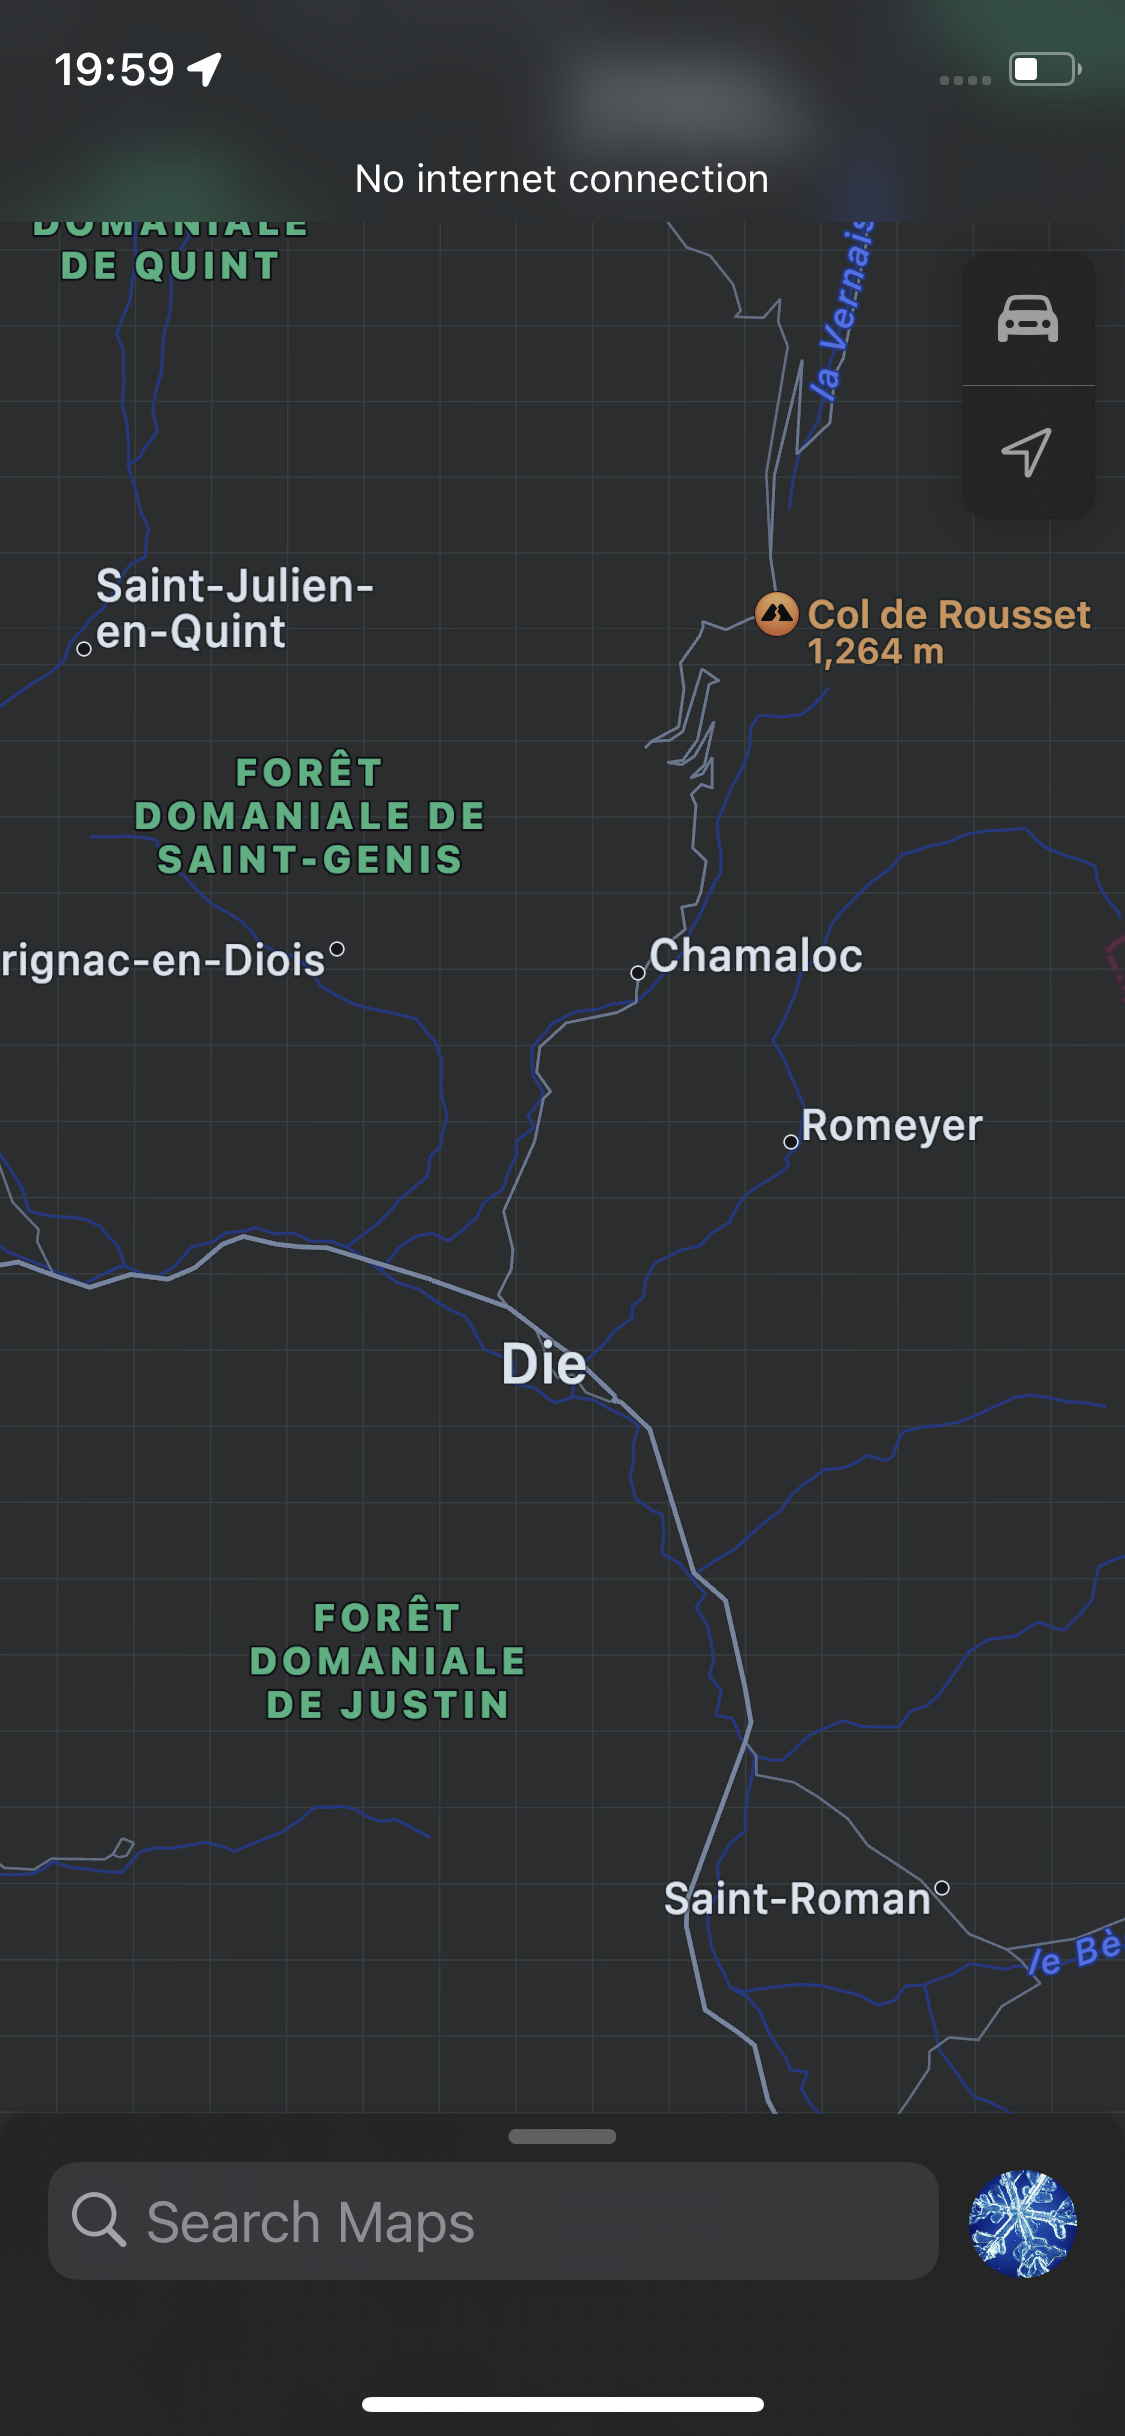 die, in the drome region of France 